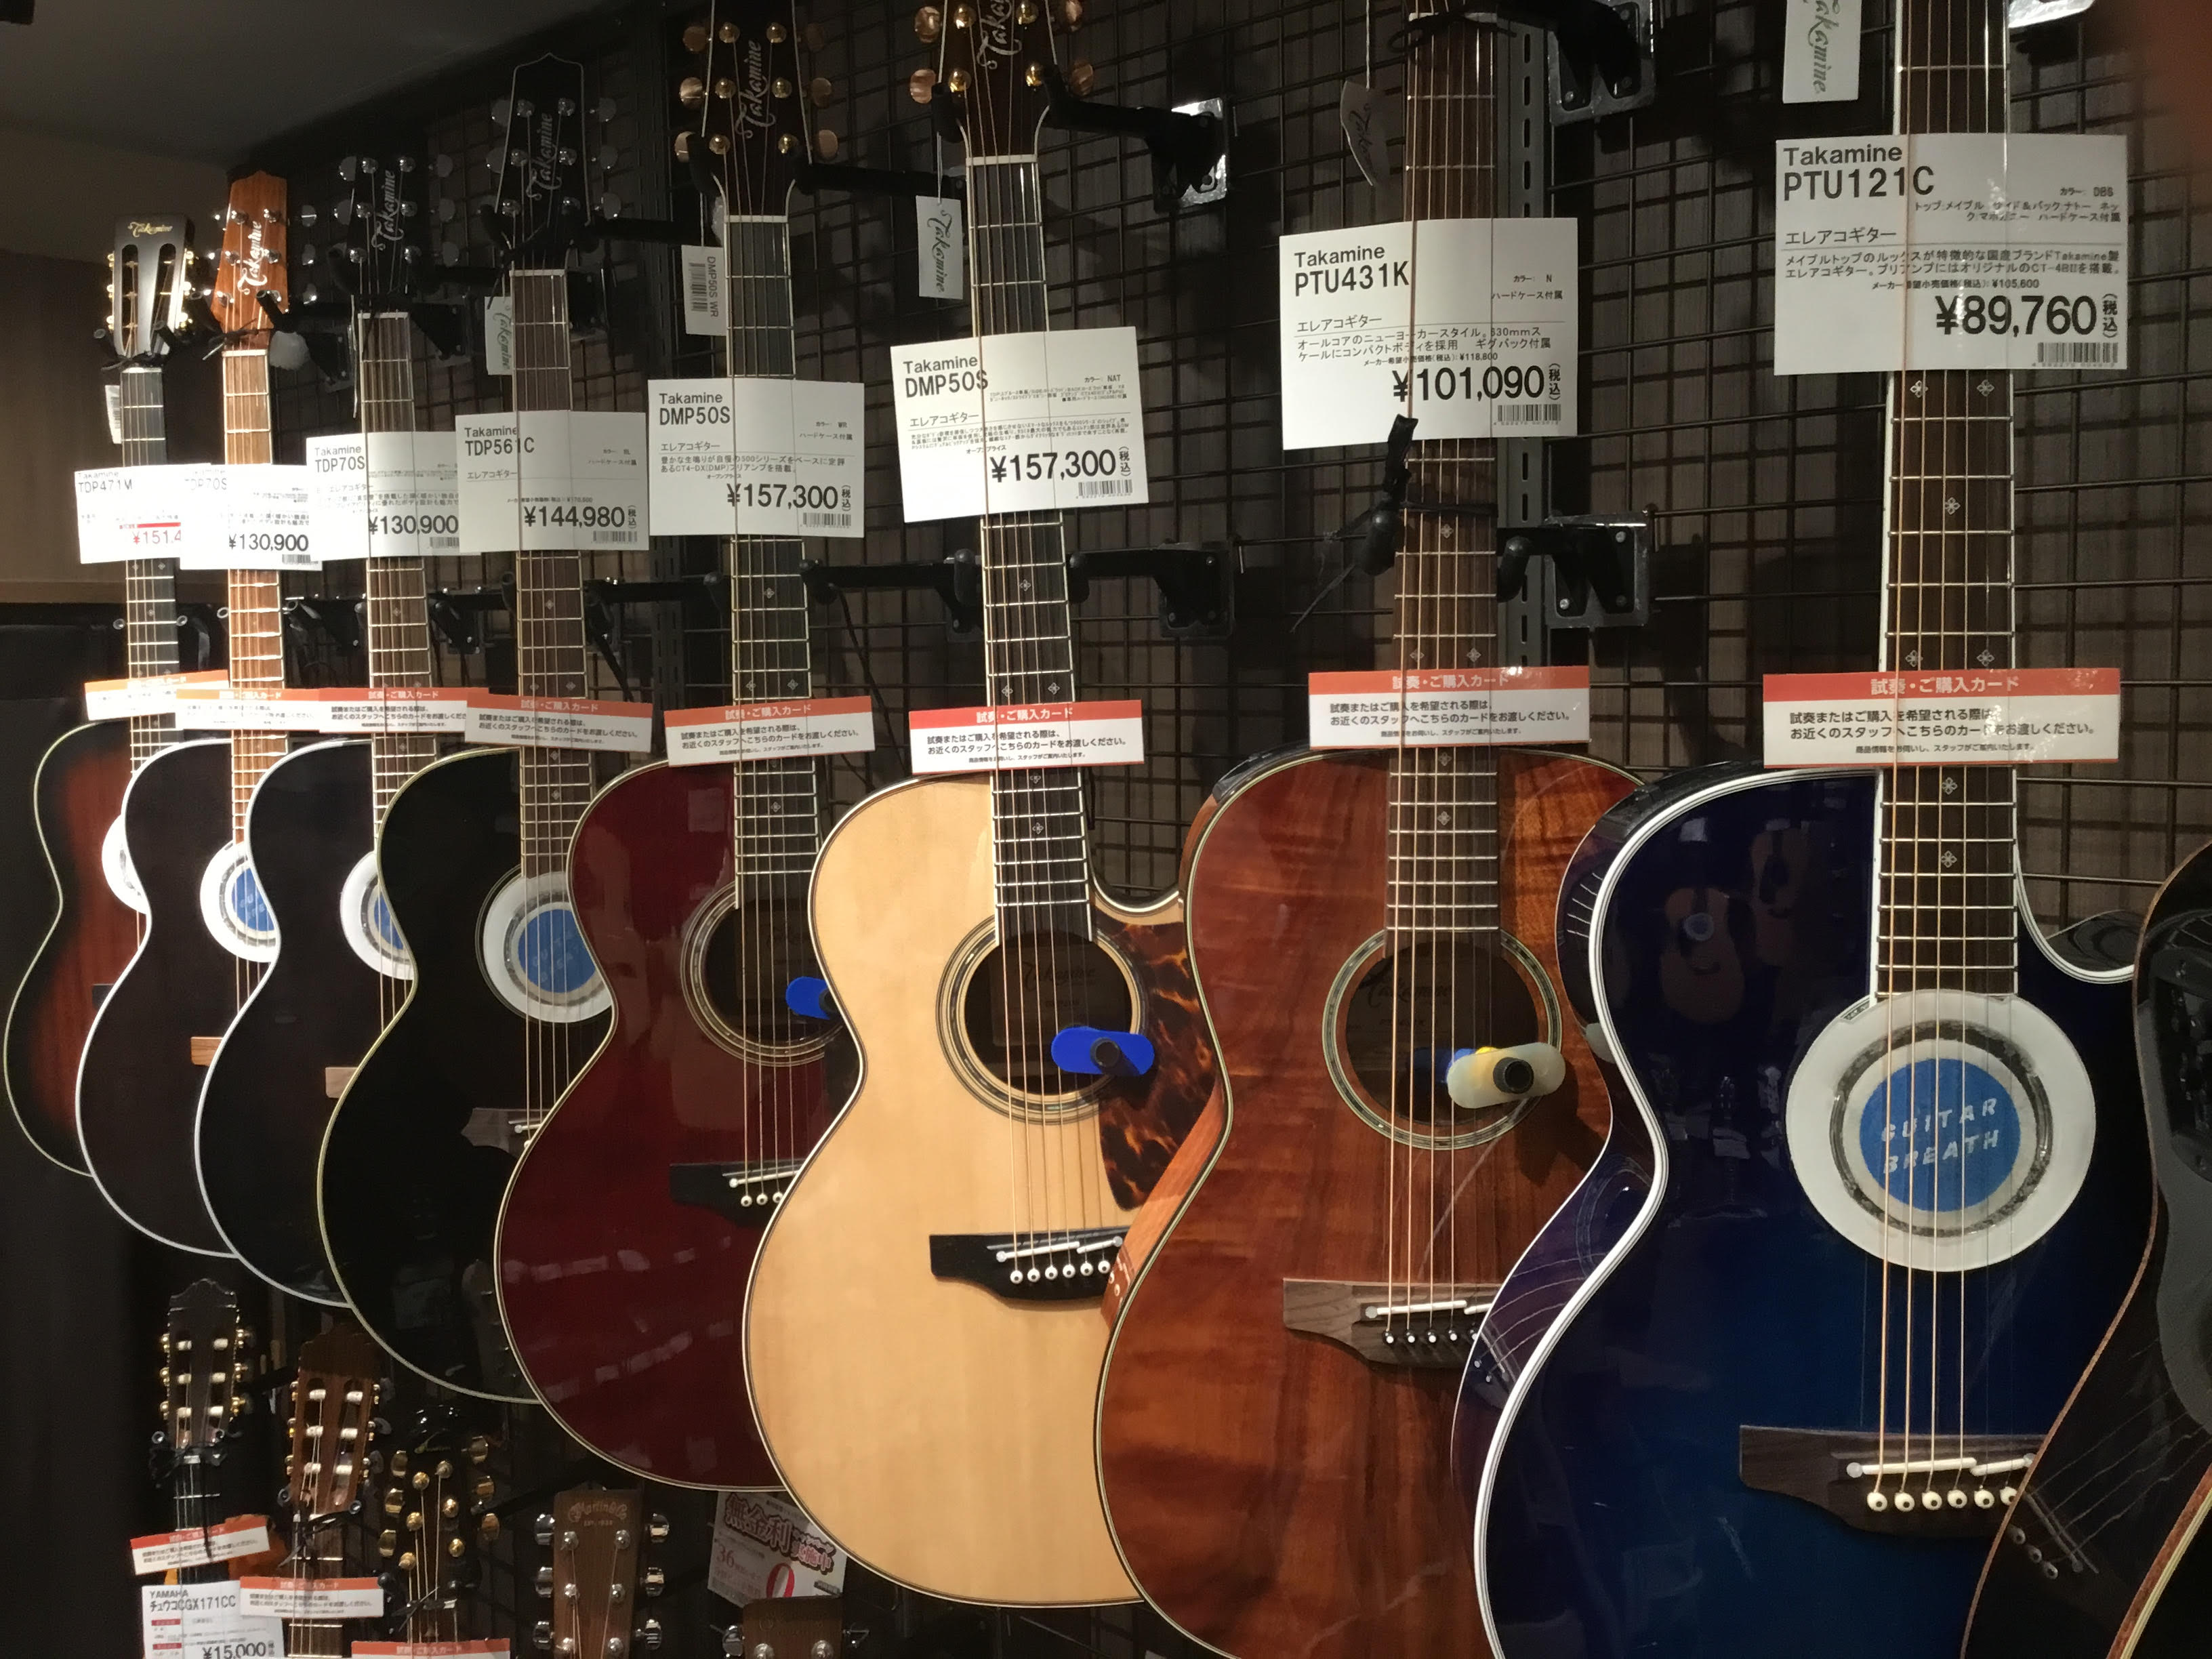 *新入荷品アリ！Takamineギター揃ってます！ 皆さんこんにちは。仙台ロフト店の武山です。 国産のエレアコに強いブランドといえば「Takamine」ですが、当店はそんなTakamineギターを多く取り揃えております！ 新たに入荷したモデルもございますのでそちらも含めて当店のラインナップをご紹介い […]